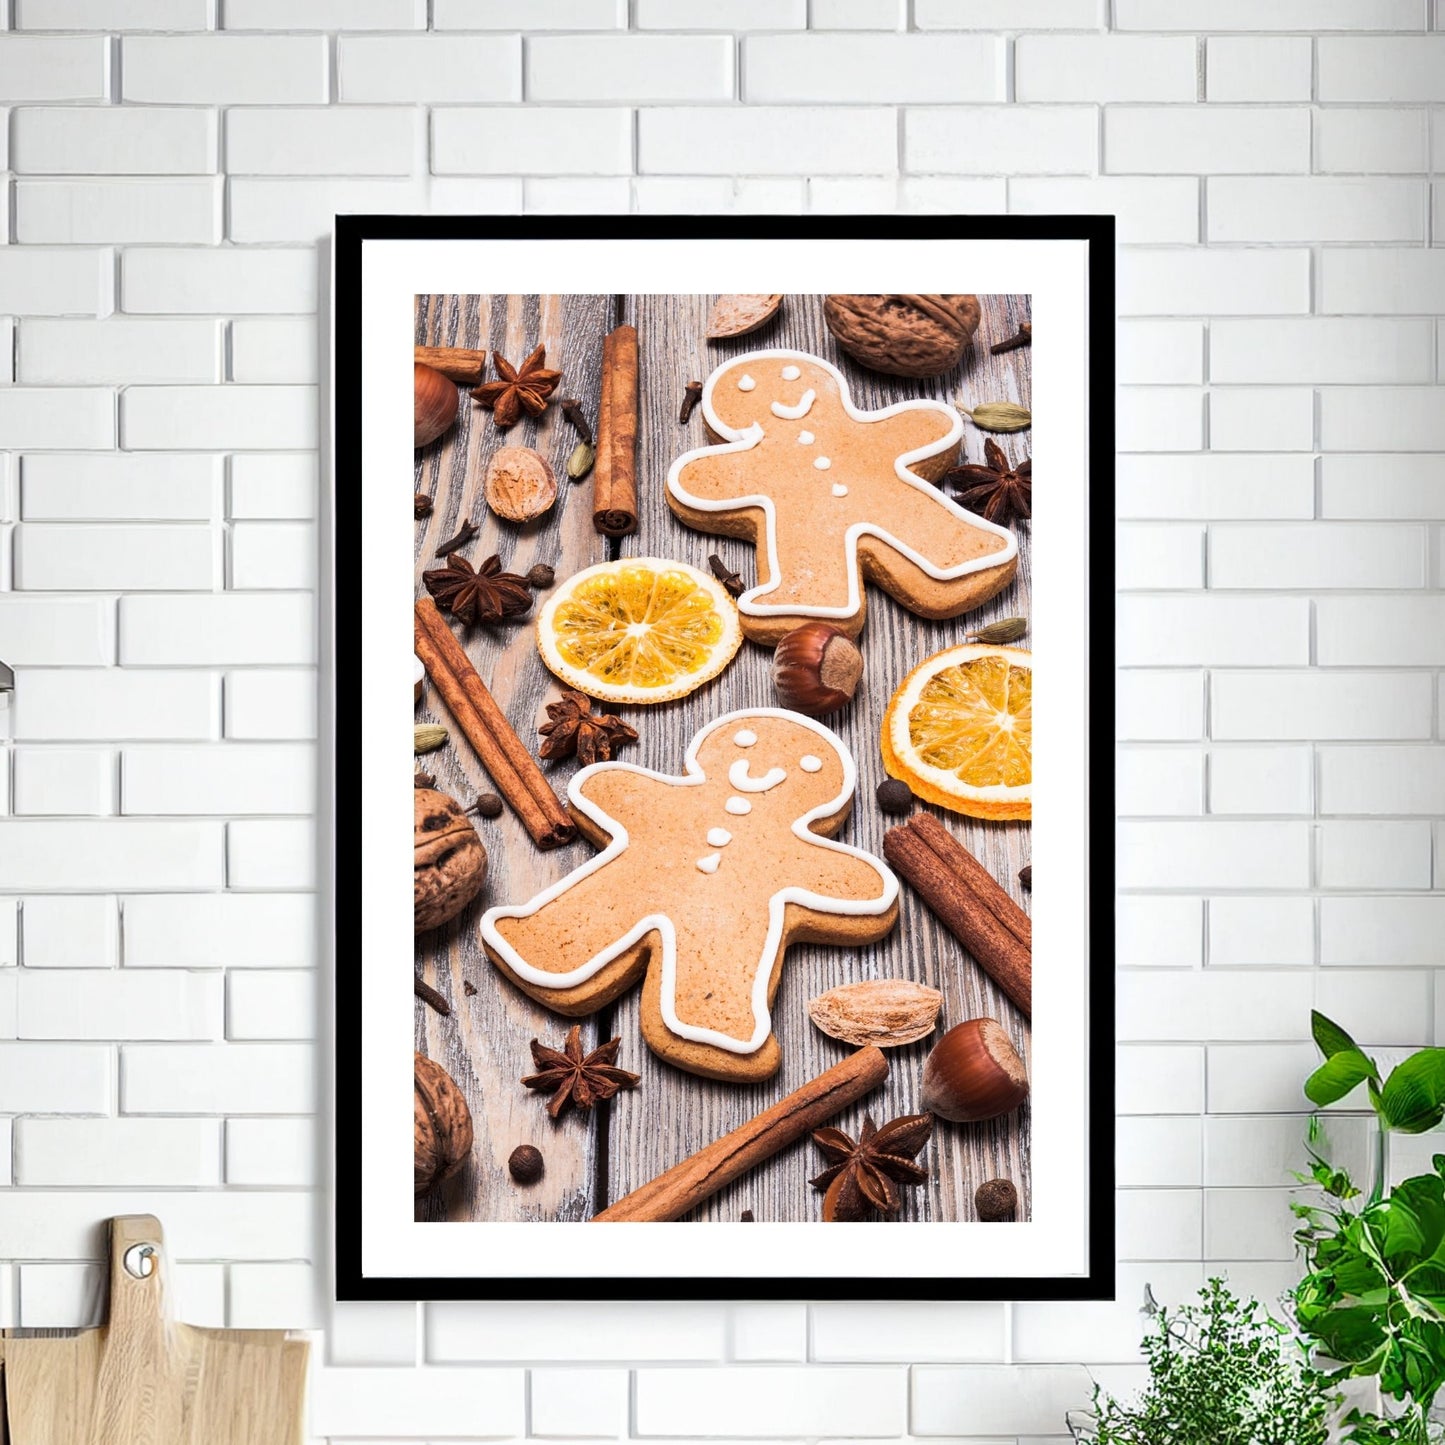 Plakat med dekorativt førjulsmotiv - pepperkaker, appelsin, kanel og stjerneanis, det som hører julen til. Illustrasjonen viser plakaten i sort ramme som henger på en vegg.